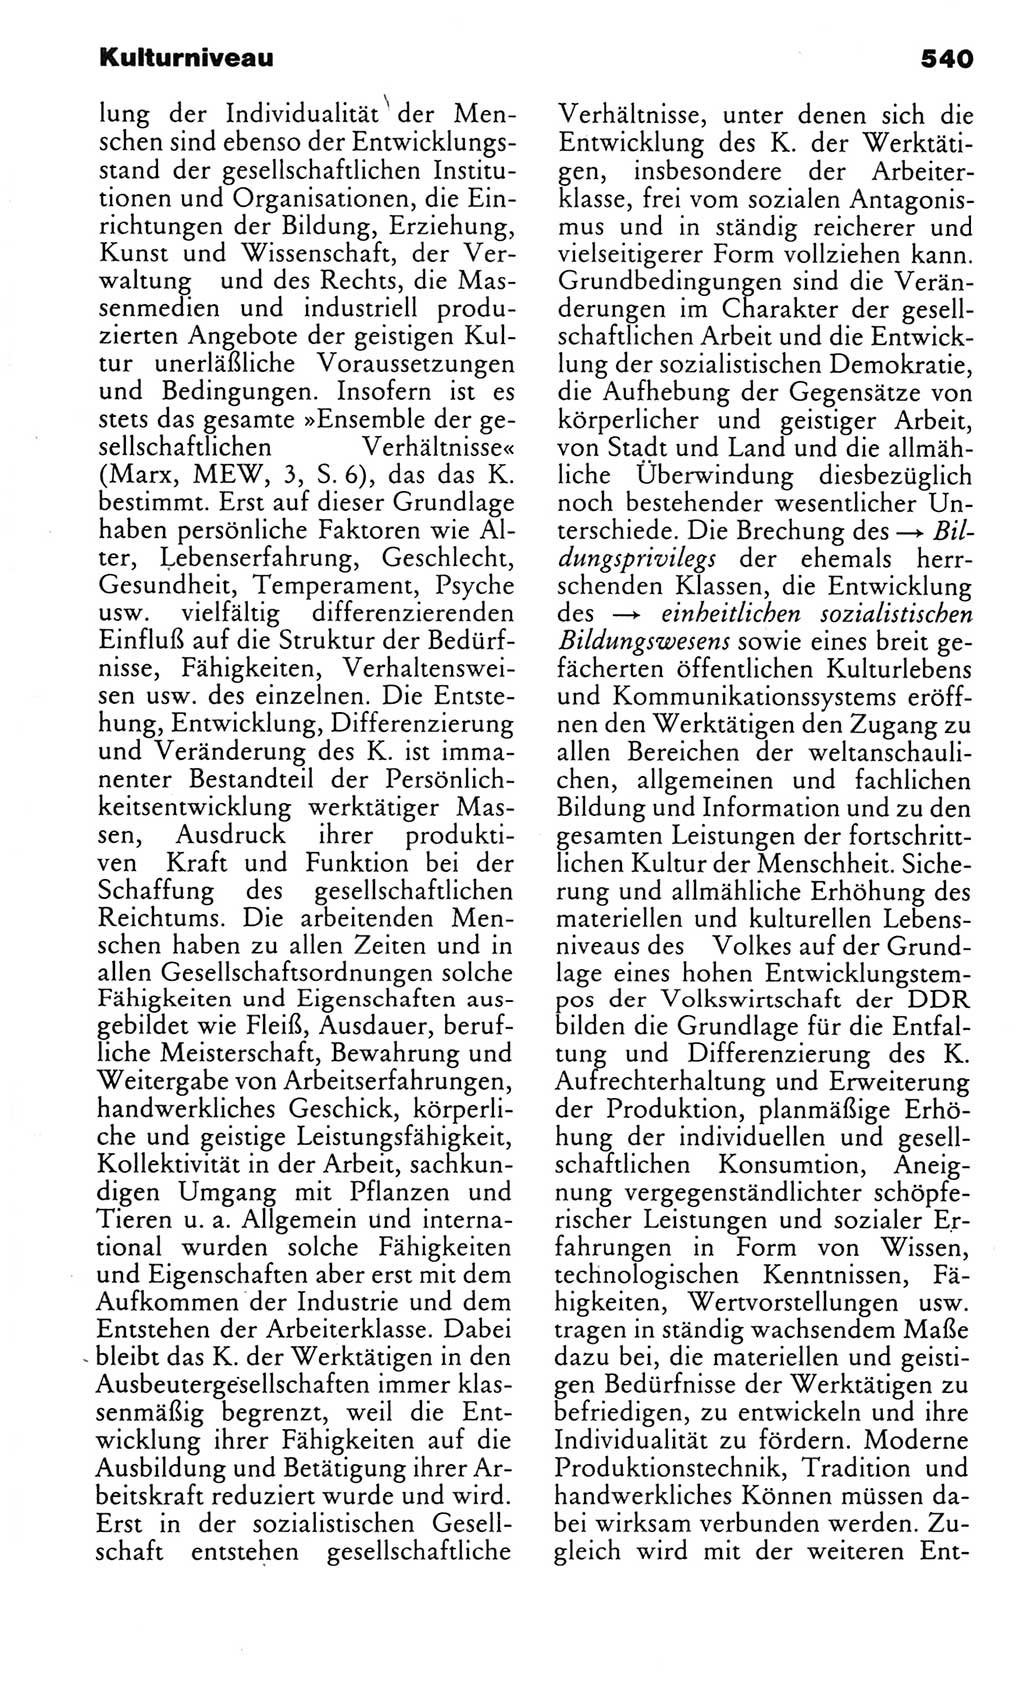 Kleines politisches Wörterbuch [Deutsche Demokratische Republik (DDR)] 1983, Seite 540 (Kl. pol. Wb. DDR 1983, S. 540)